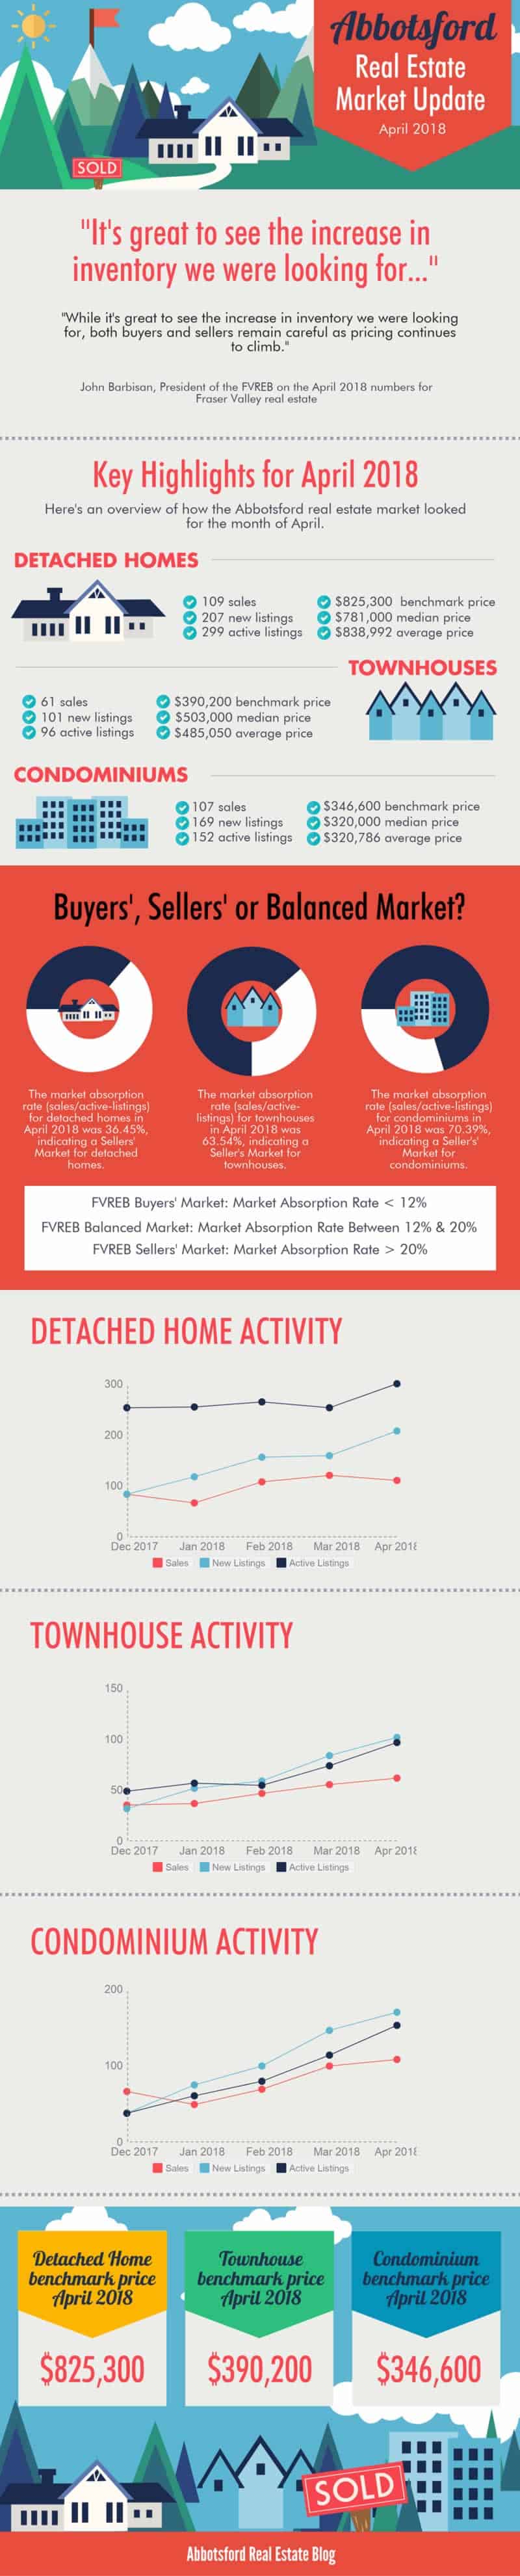 Abbotsford Condominium Market Update April 2018 Infographic